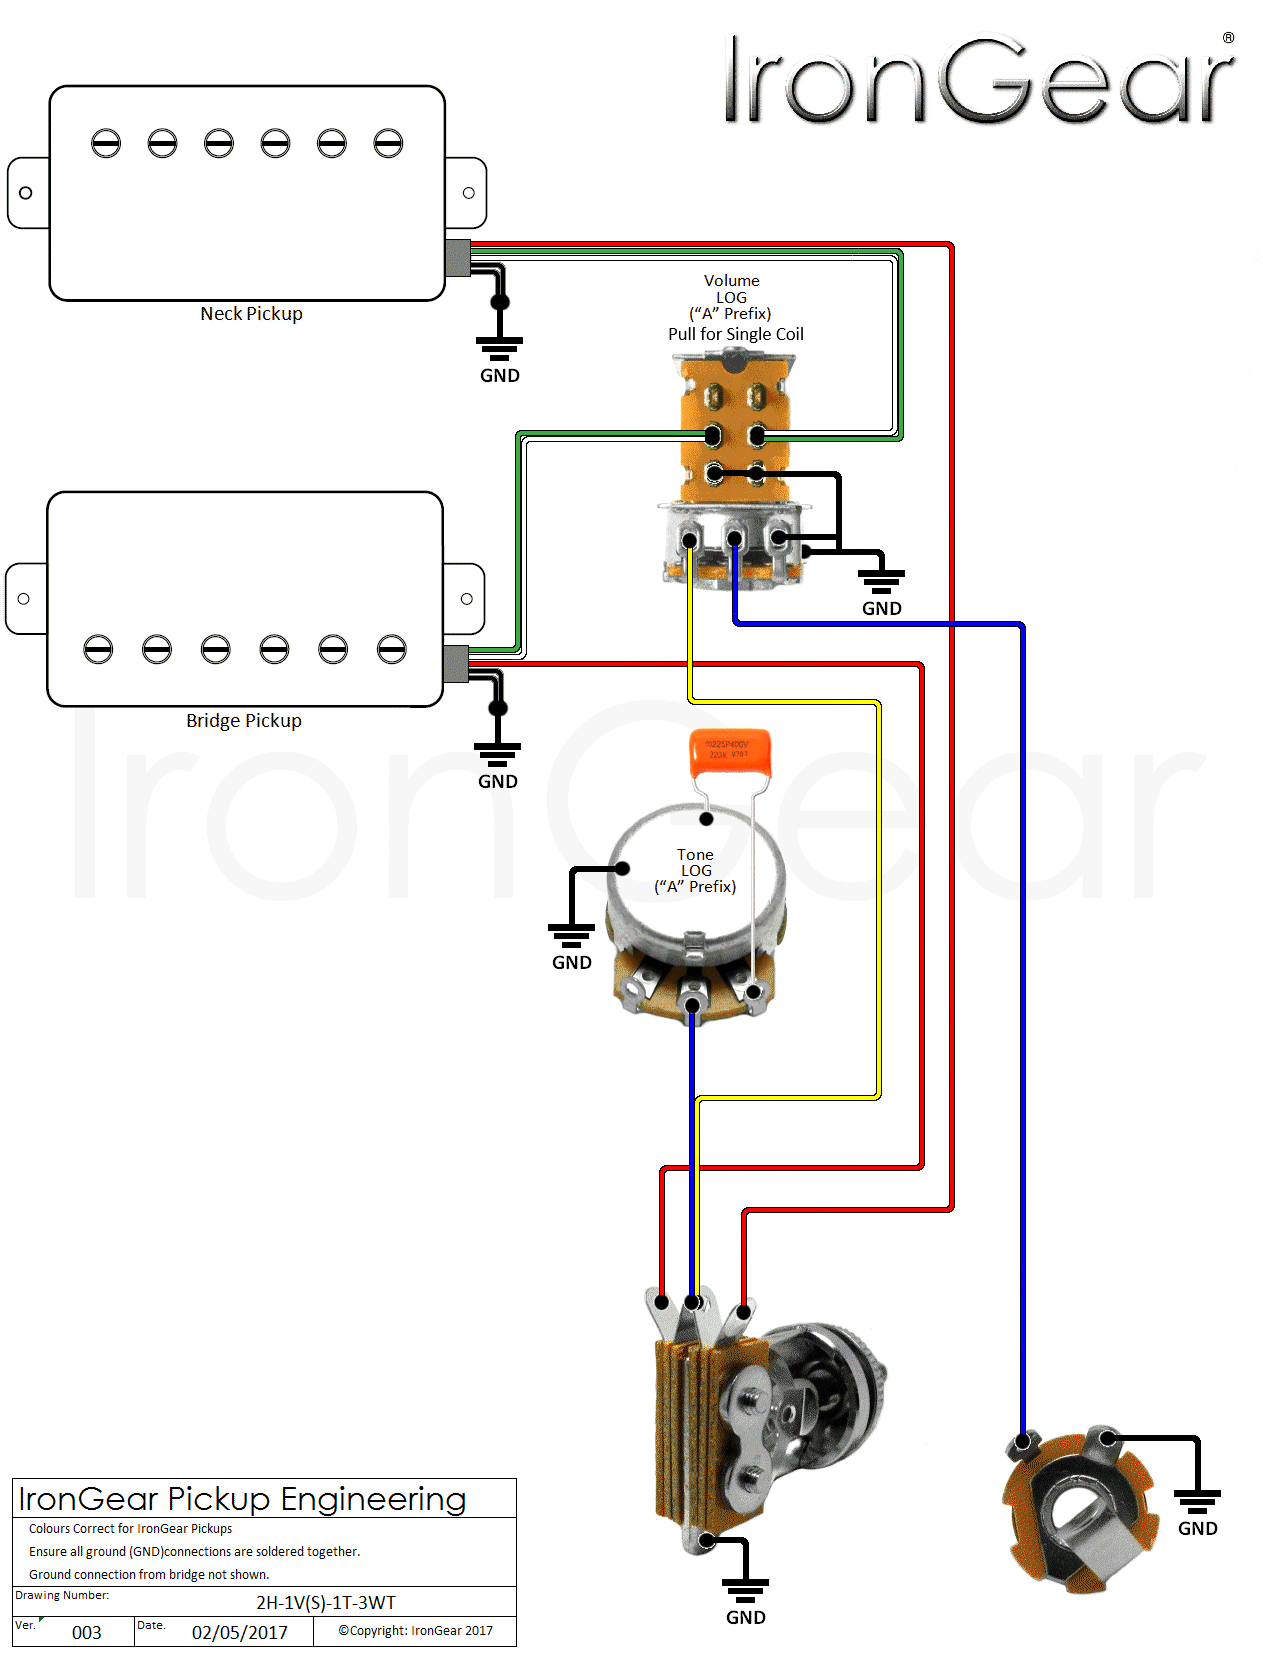 IronGear Pickups Wiring